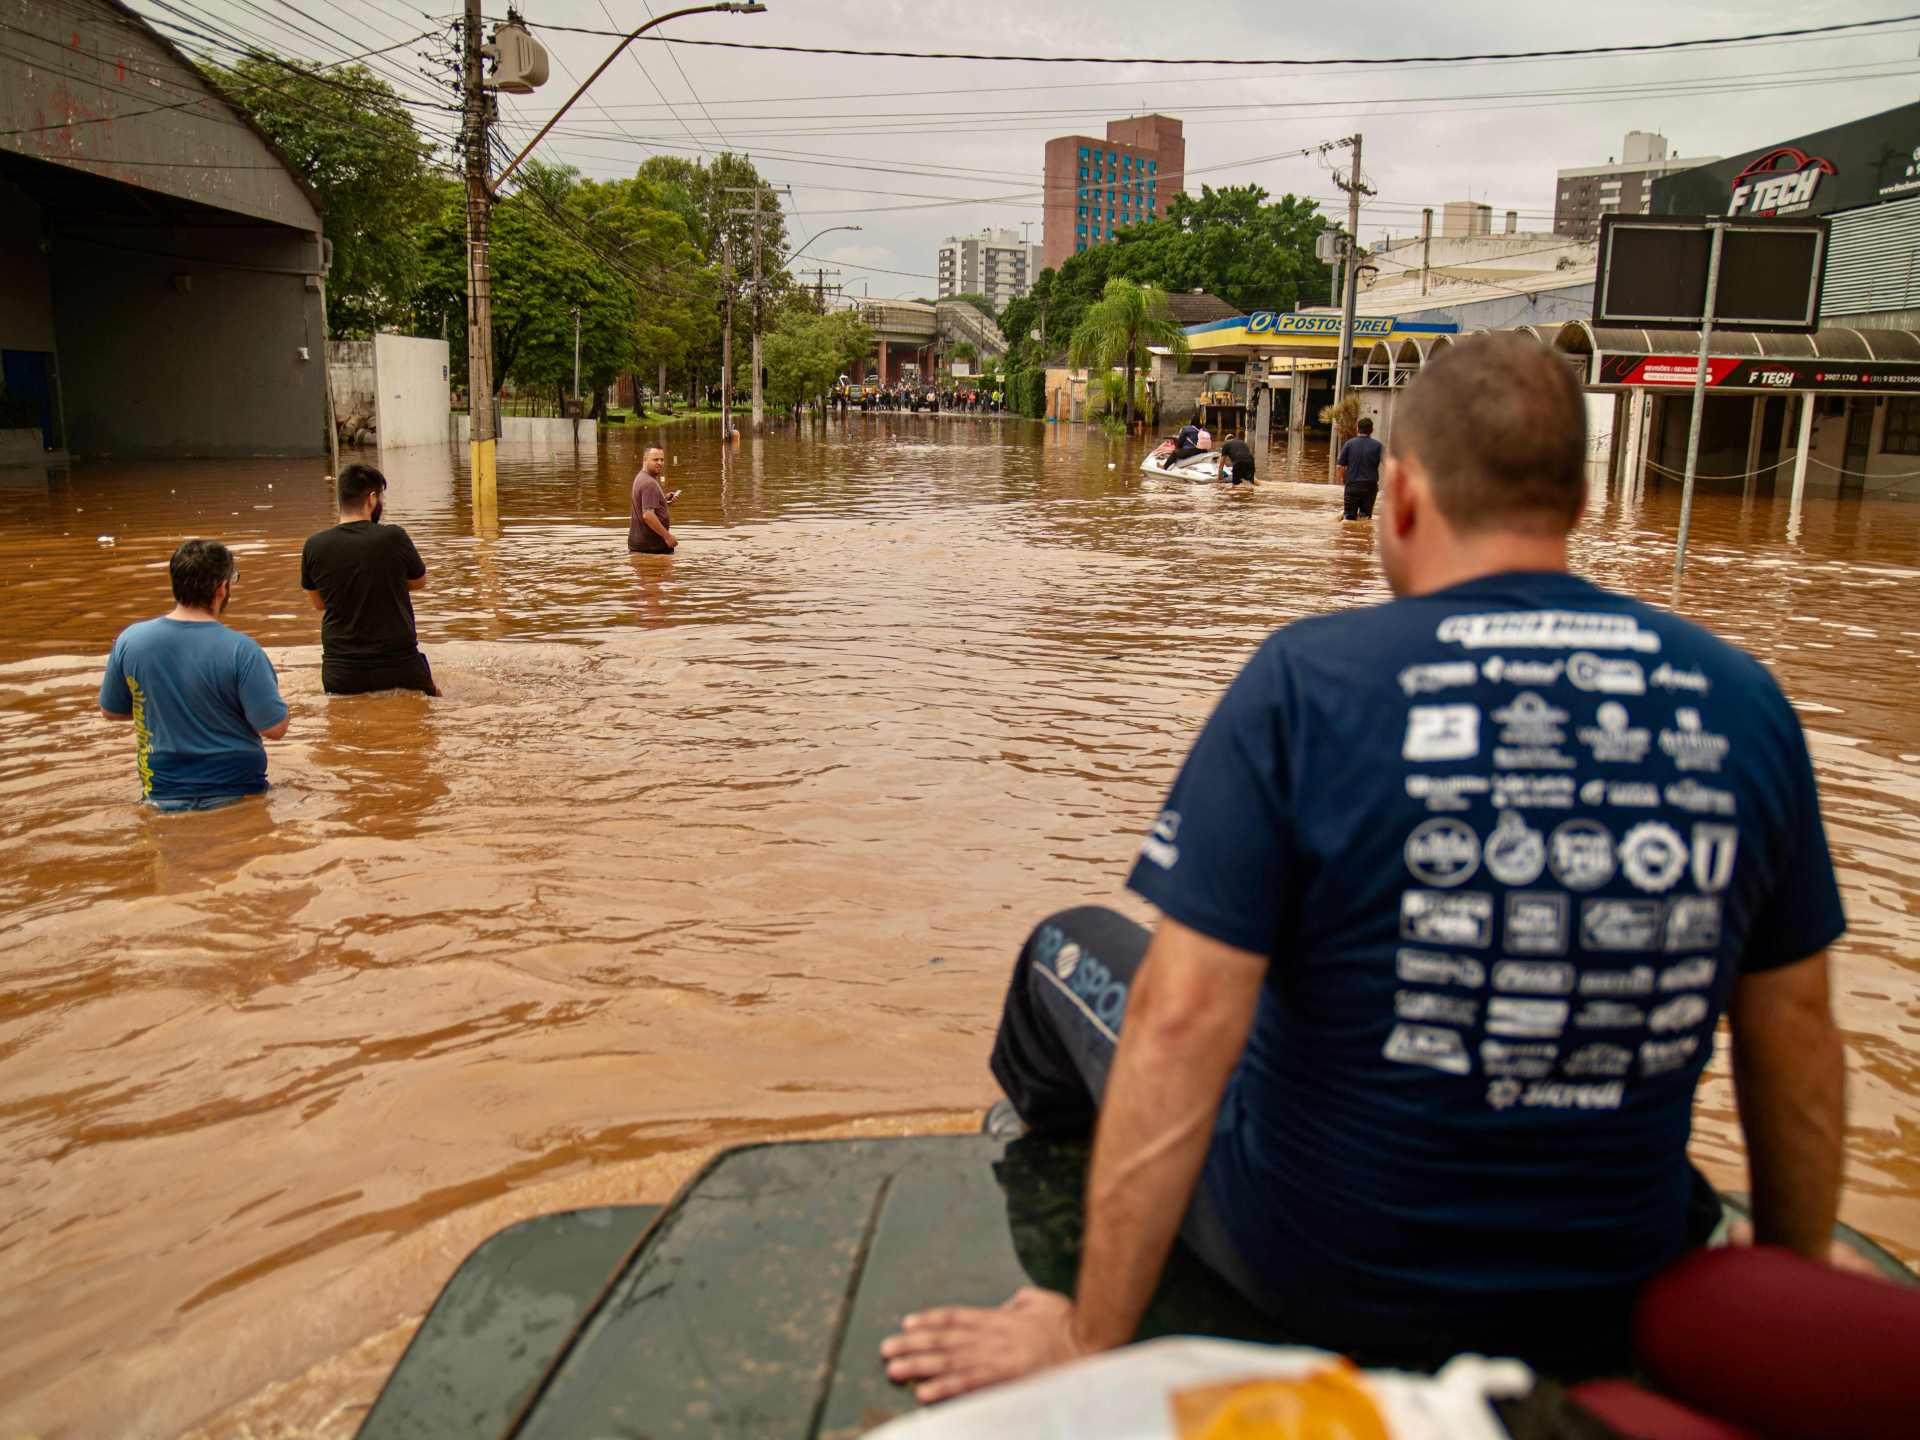 “كارثة مناخية”.. 70 ألف شخص تركوا منازلهم بسبب الفيضانات في البرازيل | أخبار – البوكس نيوز